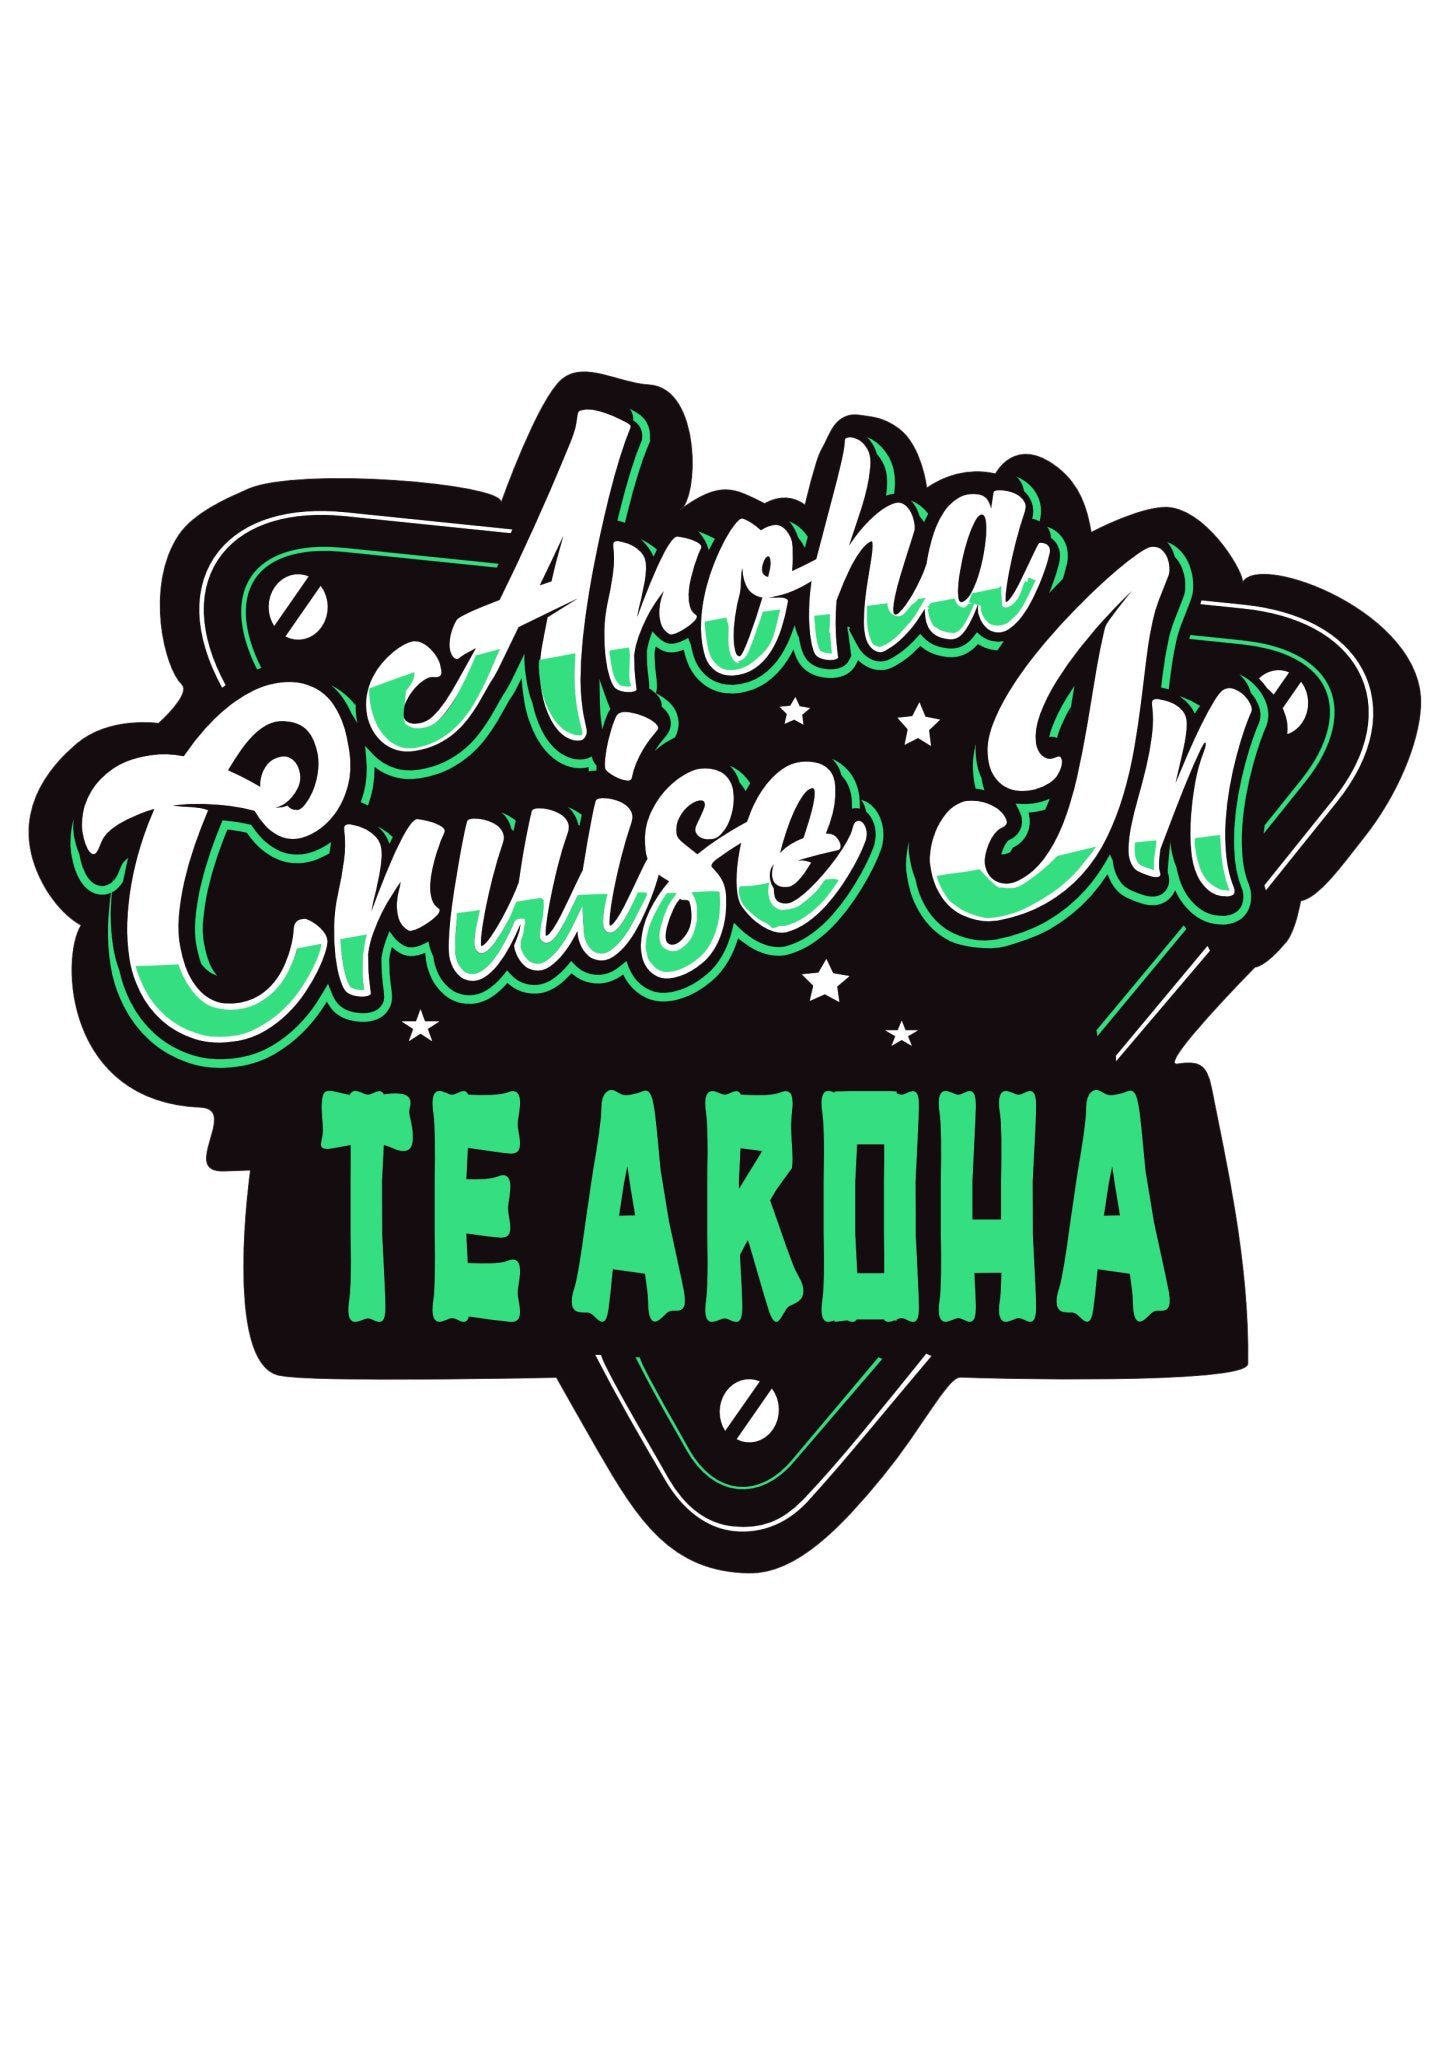 Aroha Cruise In